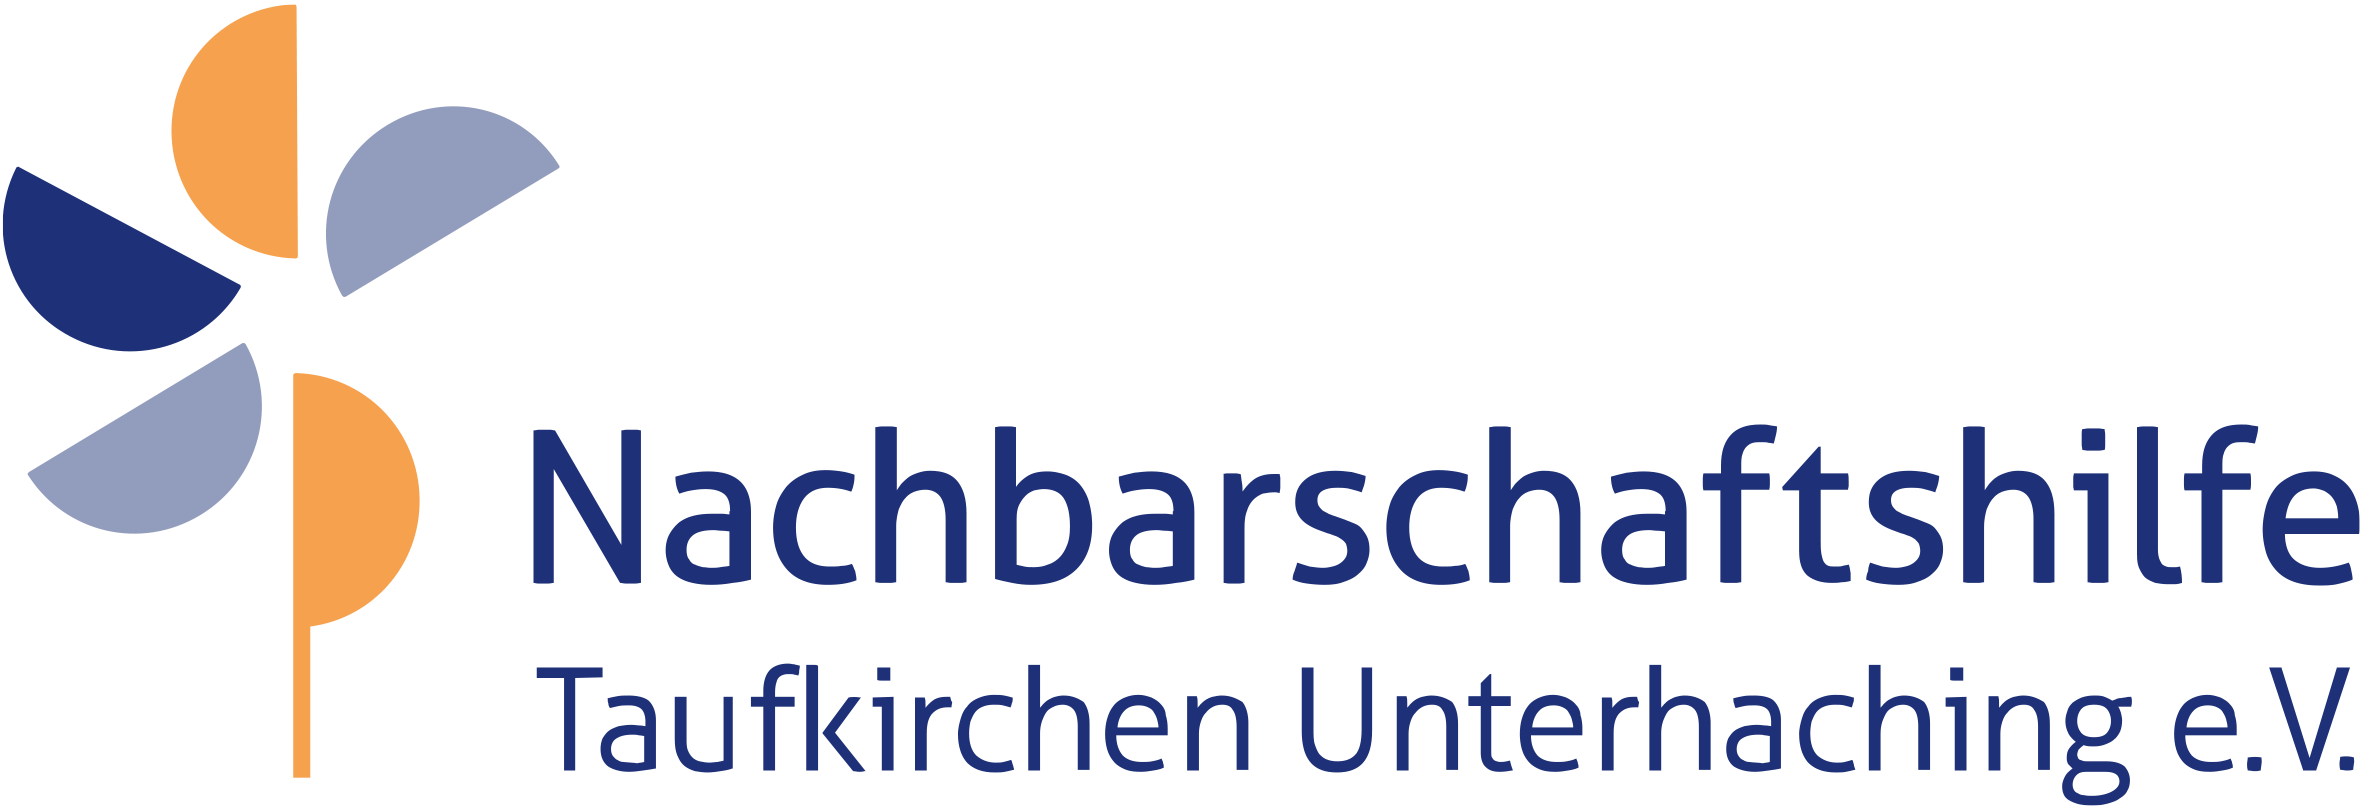 Nachbarschaftshilfe Taufkirchen Unterhaching - Hilfen im Haushalt